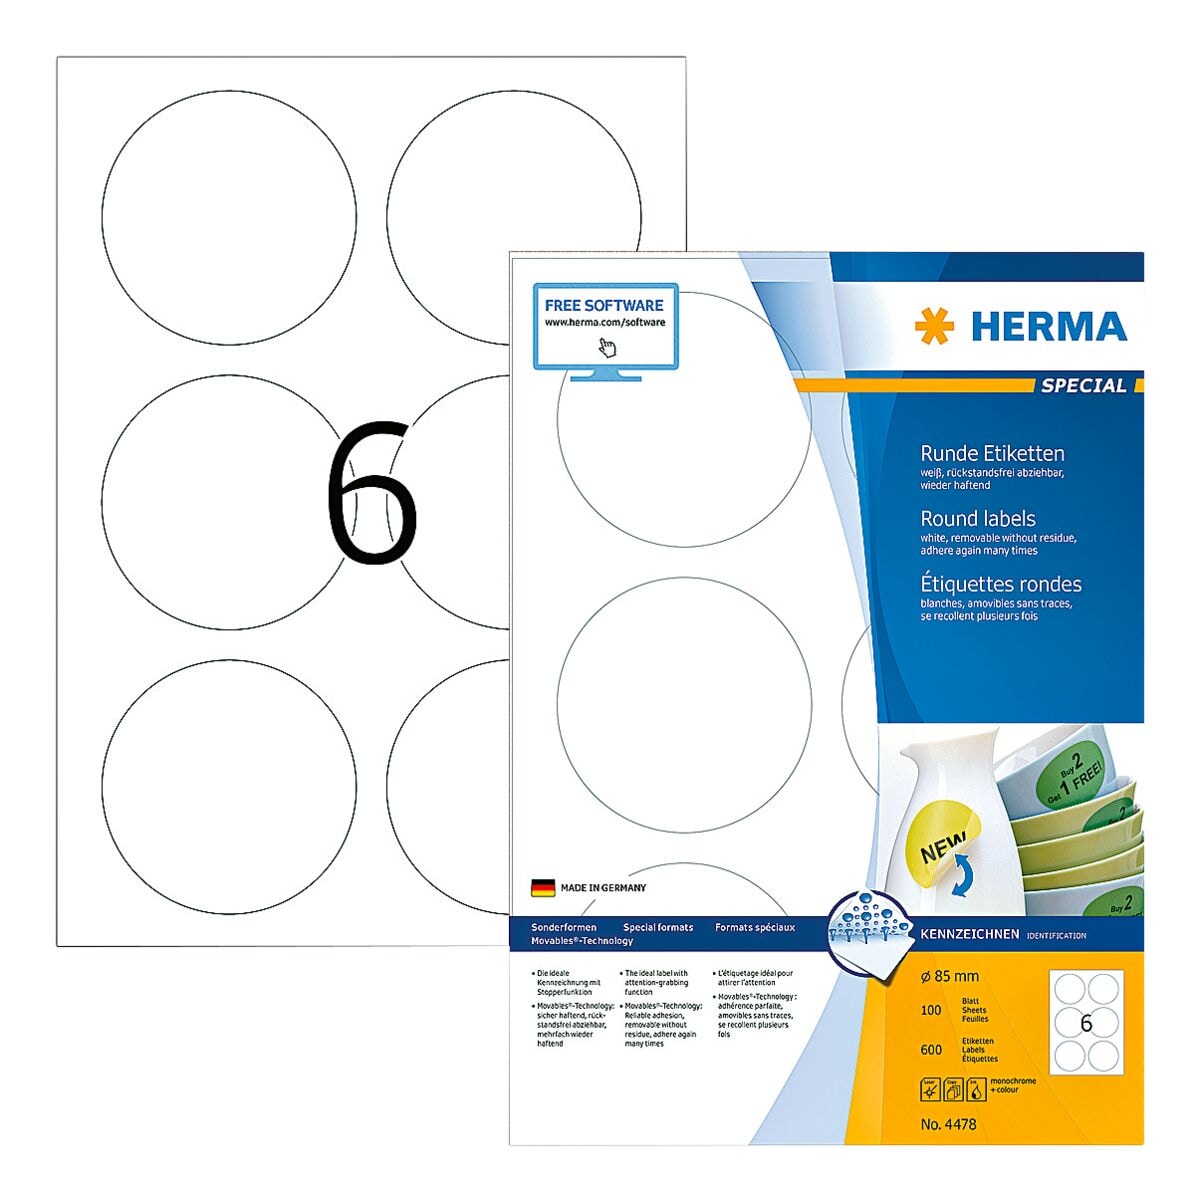 Herma 600er-Pack ablsbare Etiketten (100 Blatt)